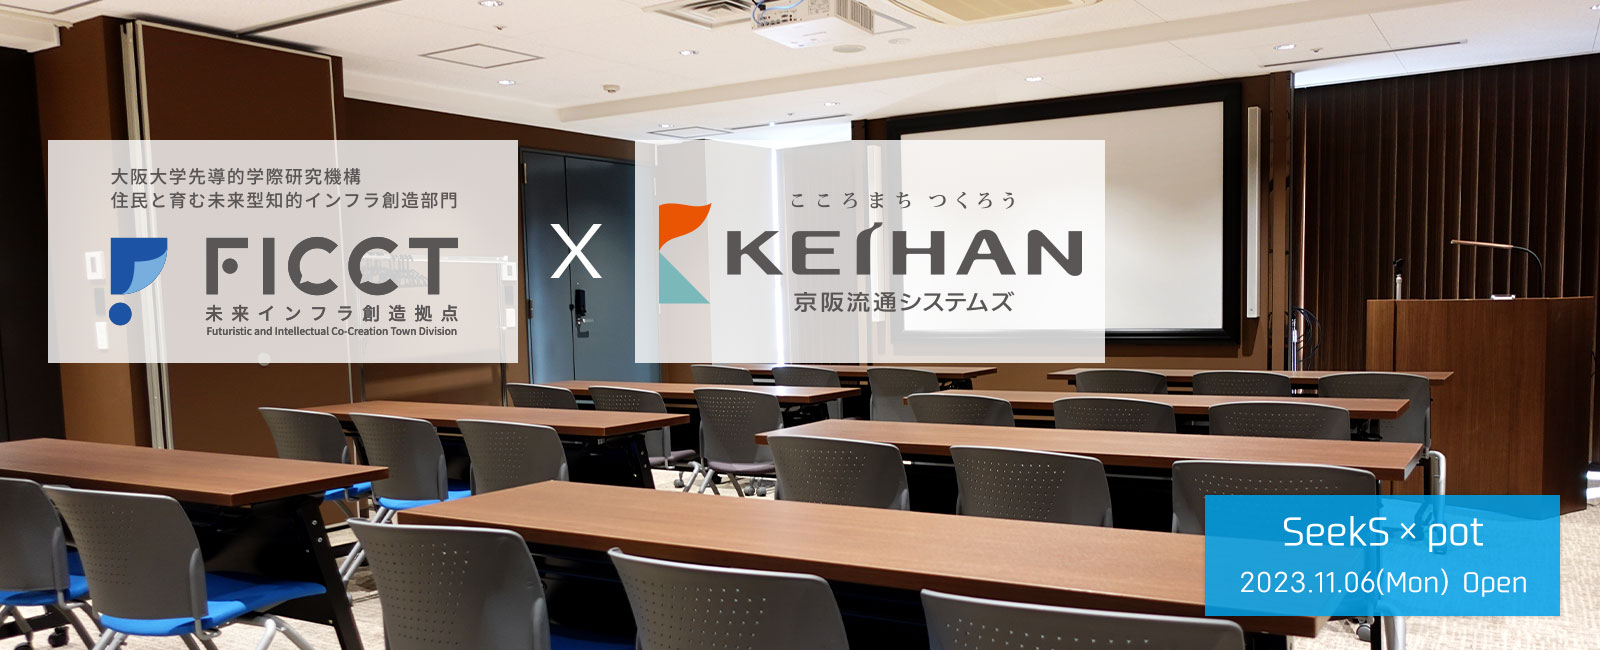 京阪×大阪大学が先導しオープンイノベーションを仕掛けるインキュベーション施設